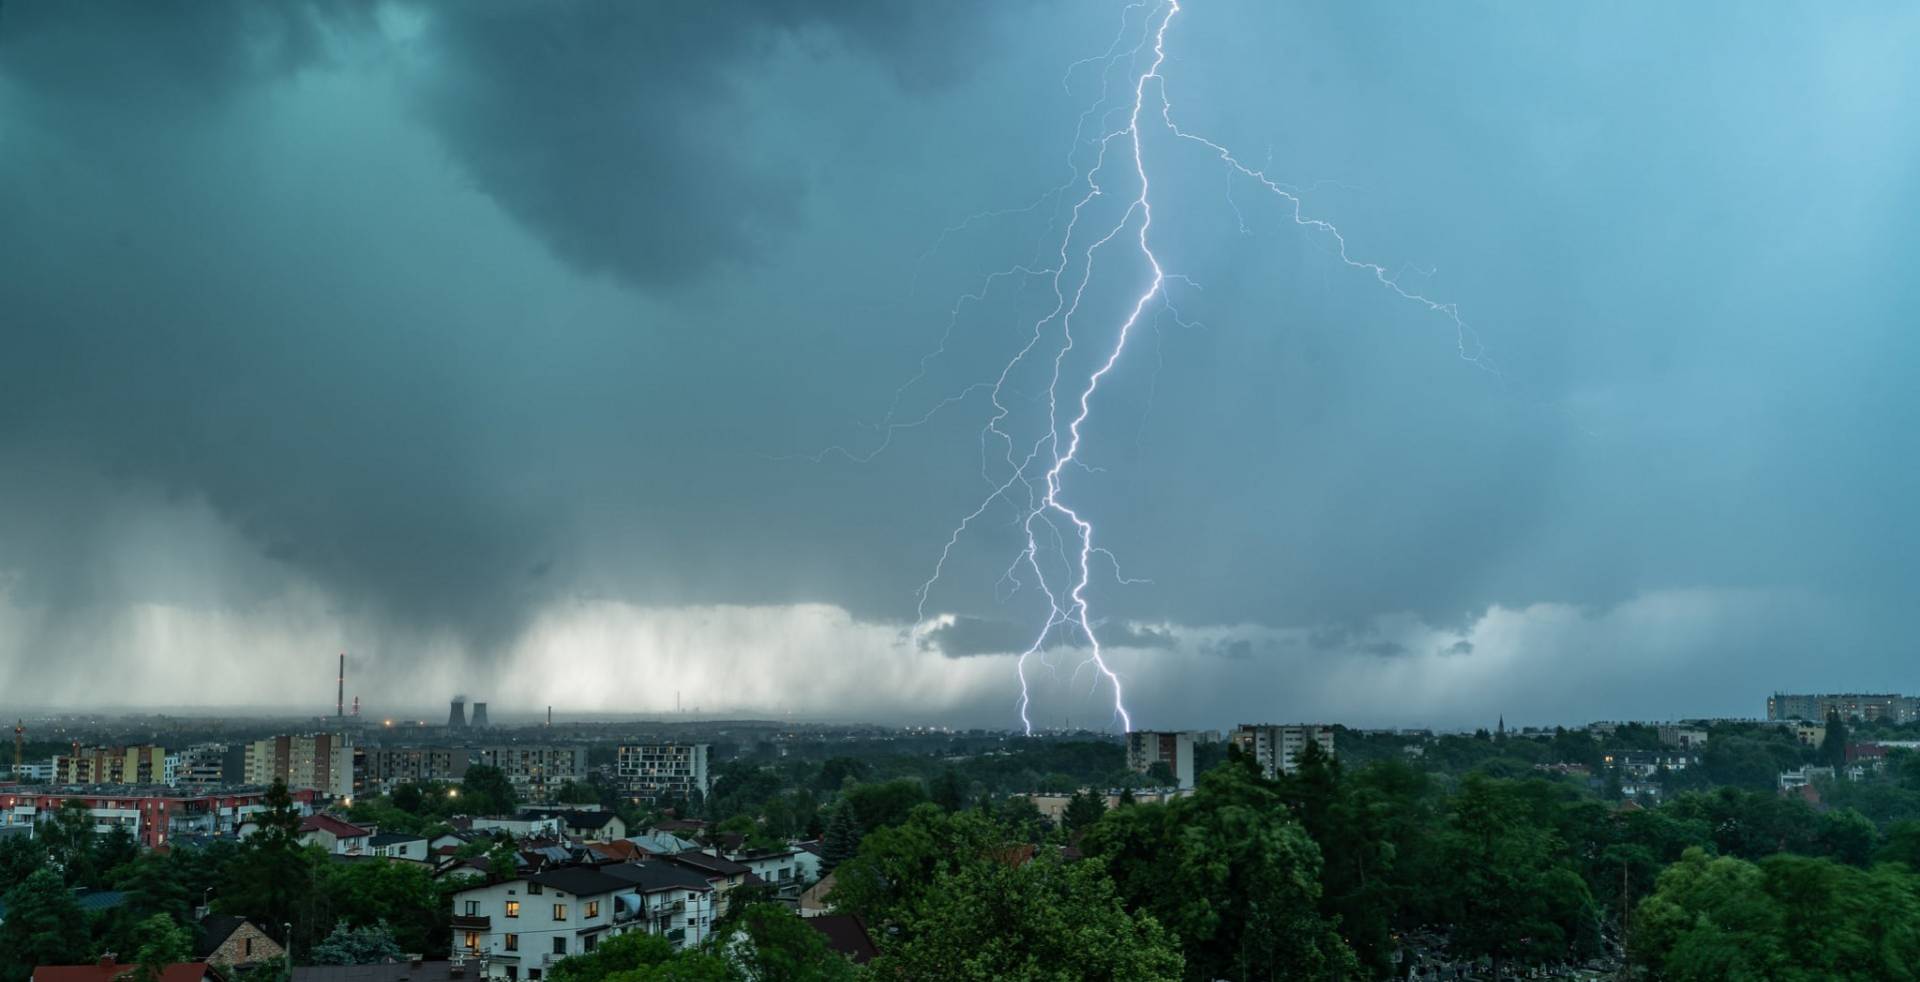 W sobotę burze z gradem i wiatr do 100 km/h, ostrzeżenie dla całej Małopolski